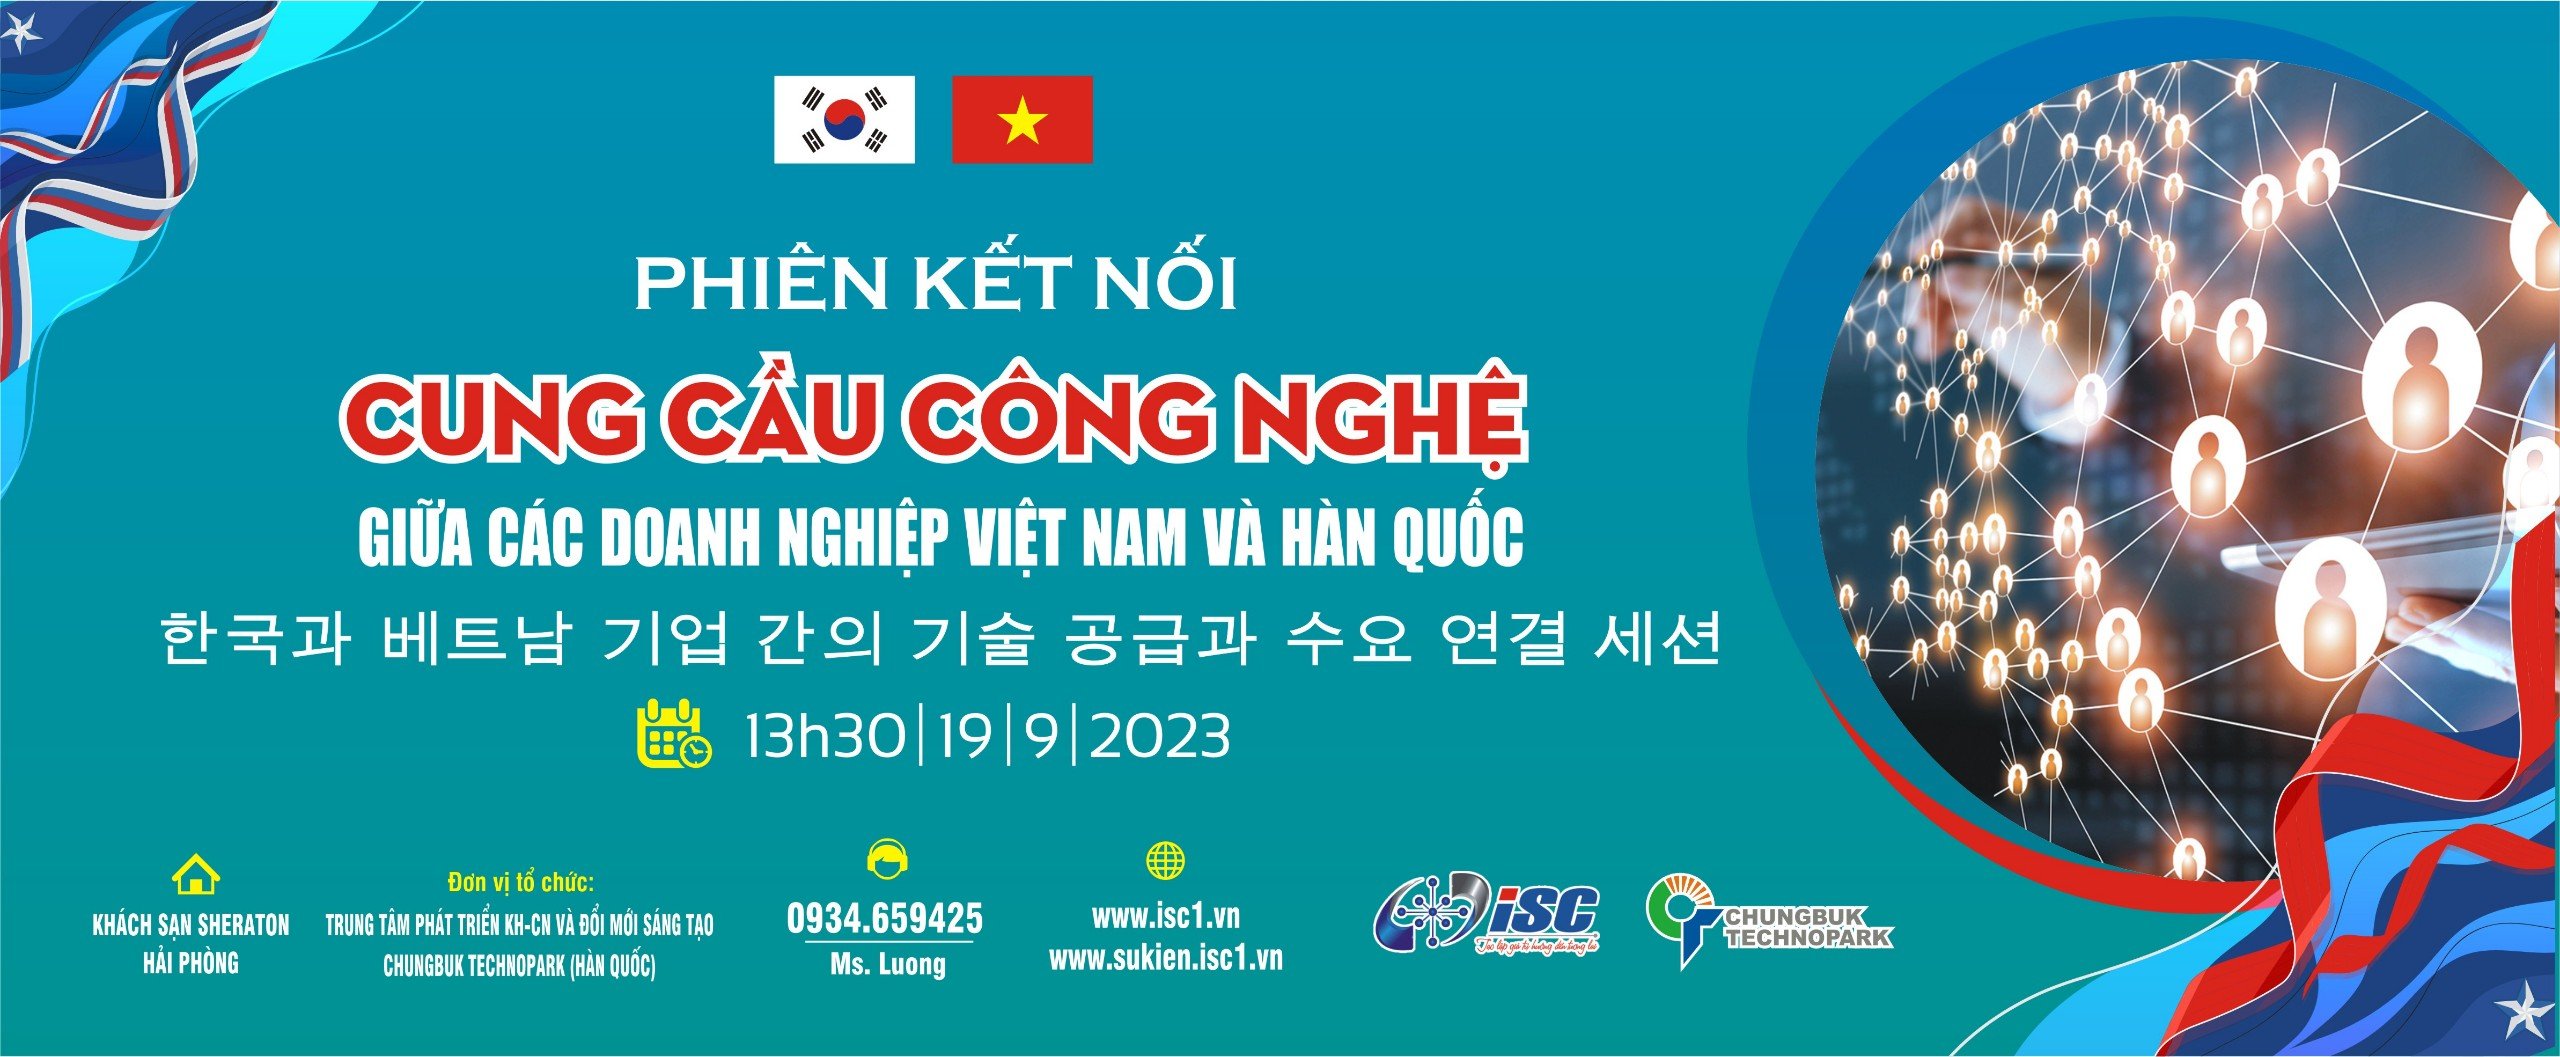 Phiên kết nối cung cầu công nghệ giữa các doanh nghiệp Việt Nam và Hàn Quốc.